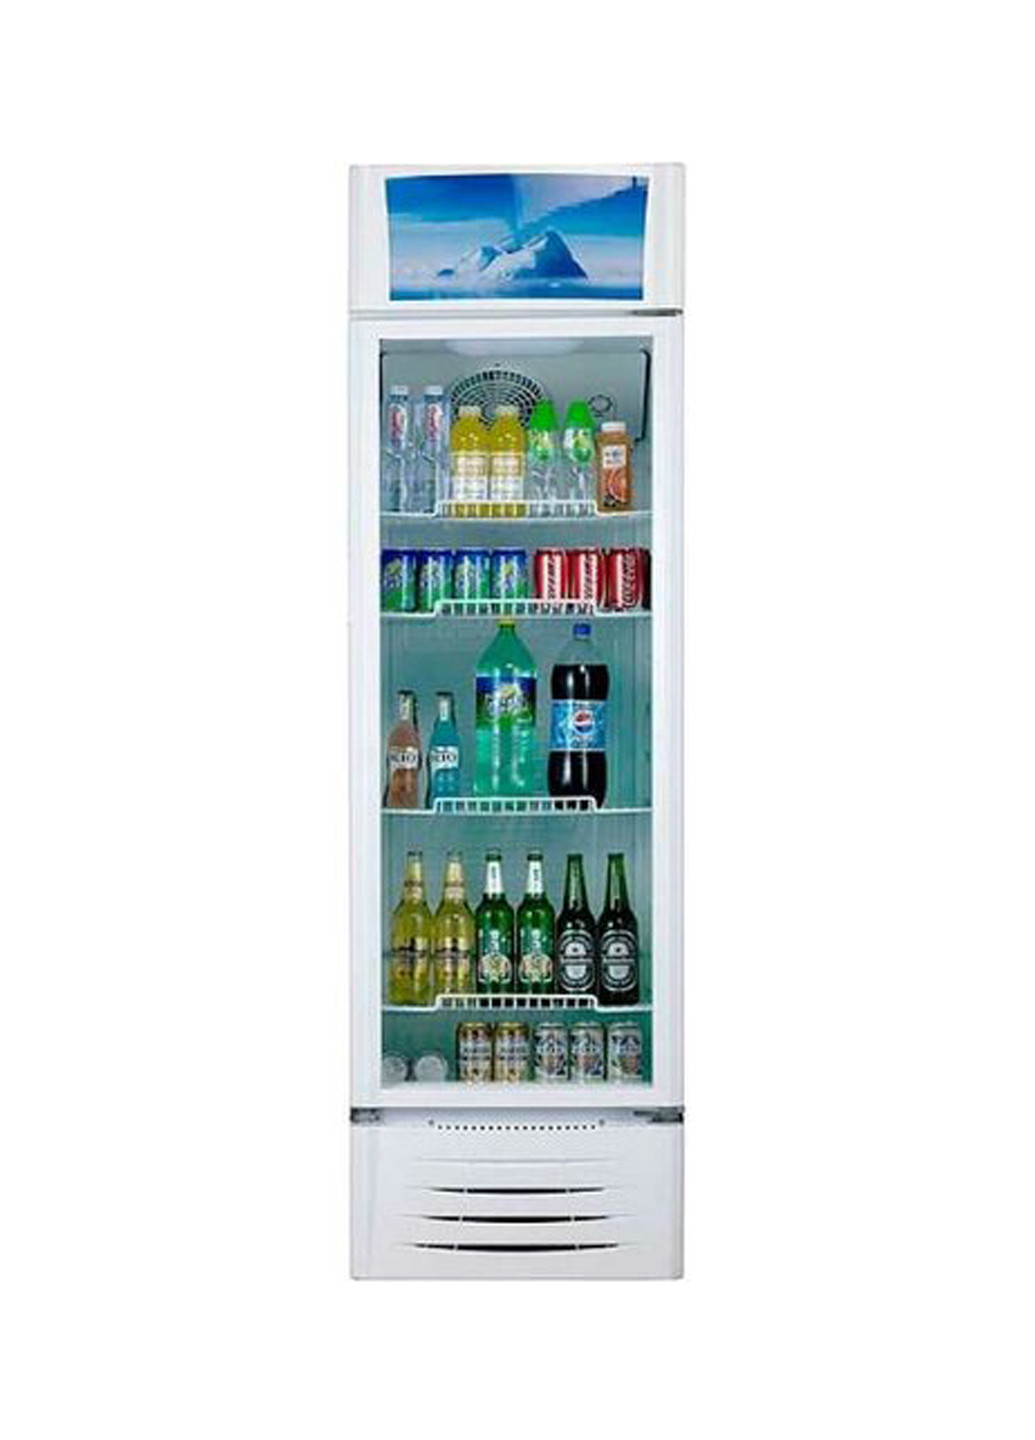 Холодильник однокамерный PRIME TECHNICS PSC 201 MW